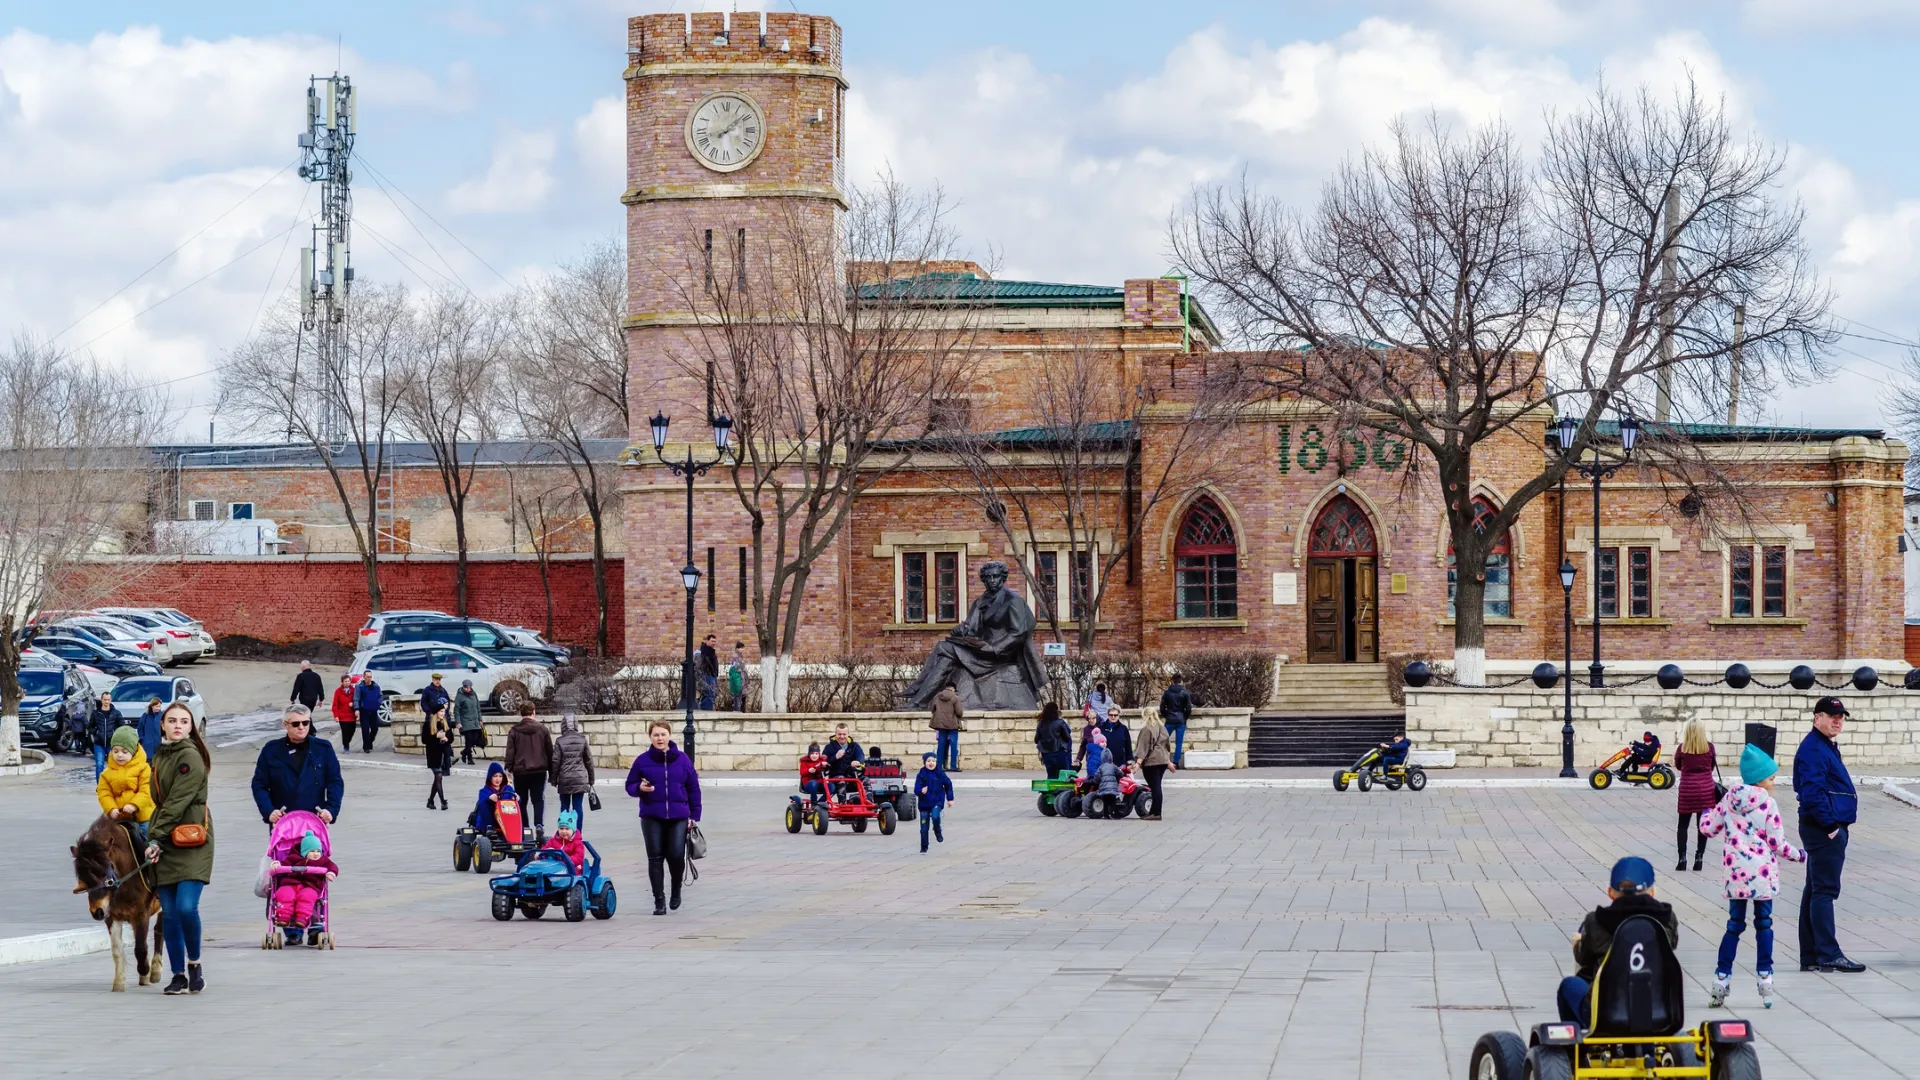 Здание бывшей гауптвахты, ныне музей истории Оренбурга. Фото: Vadim Orlov/Shutterstock/Fotodom